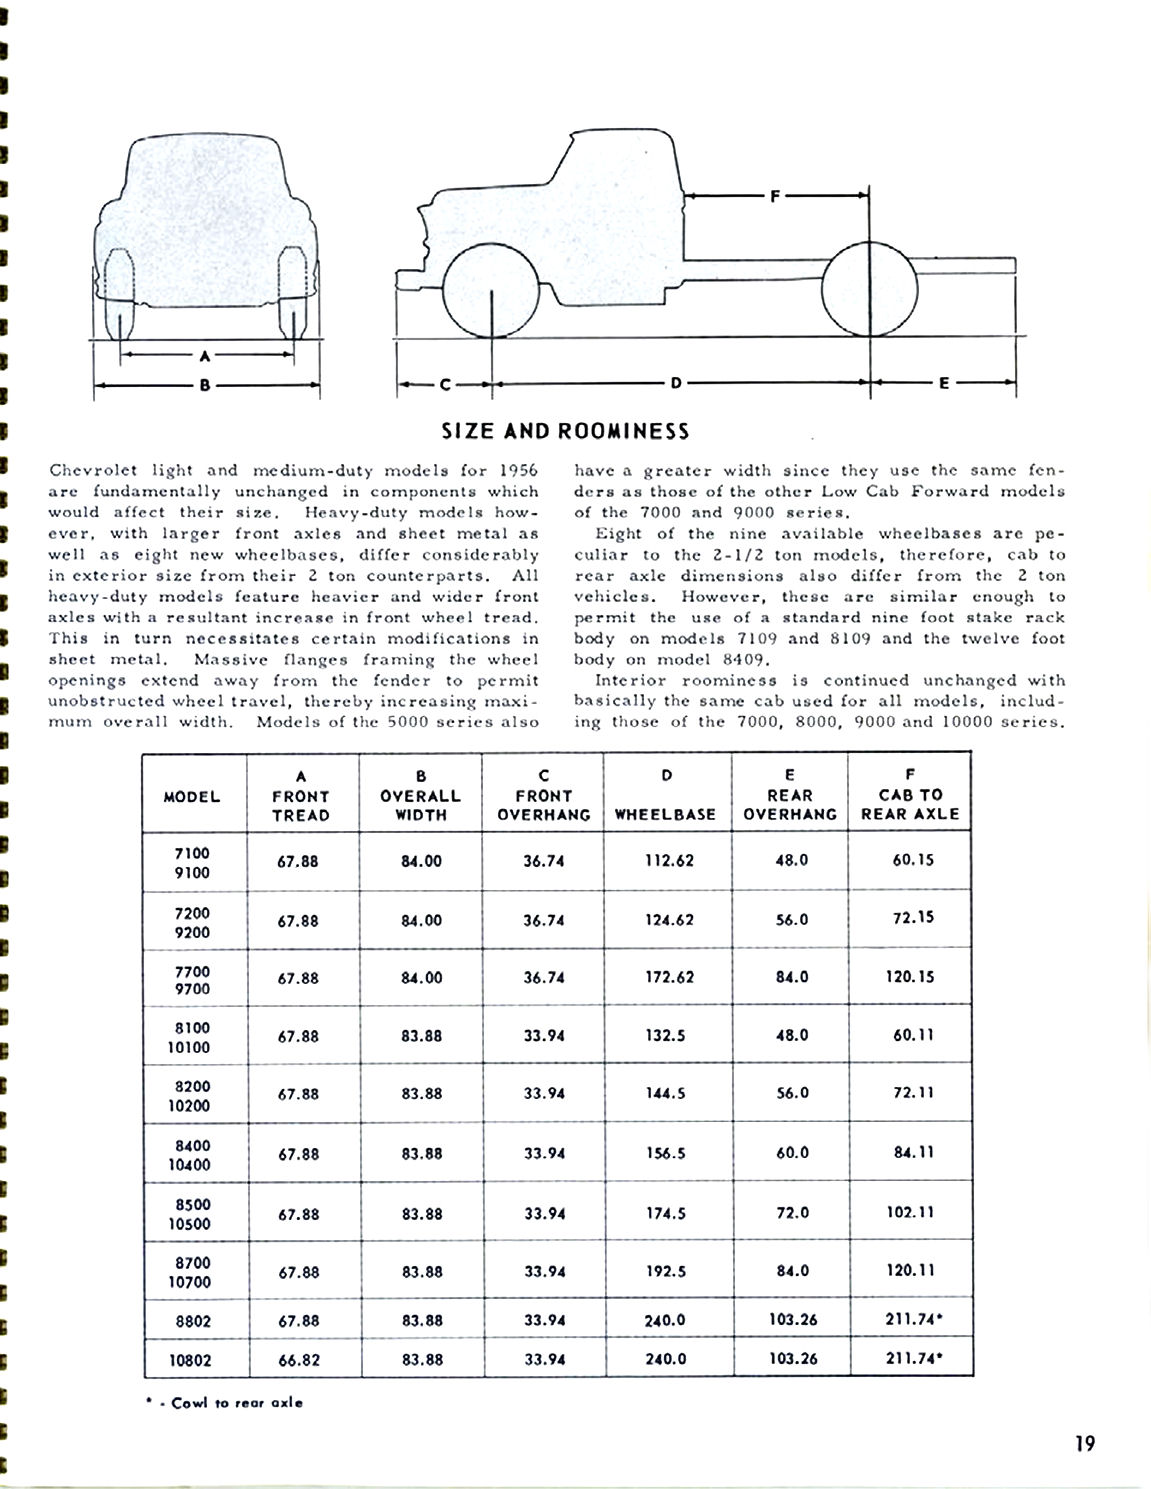 1956_Chevrolet_Truck_Engineering_Features-19